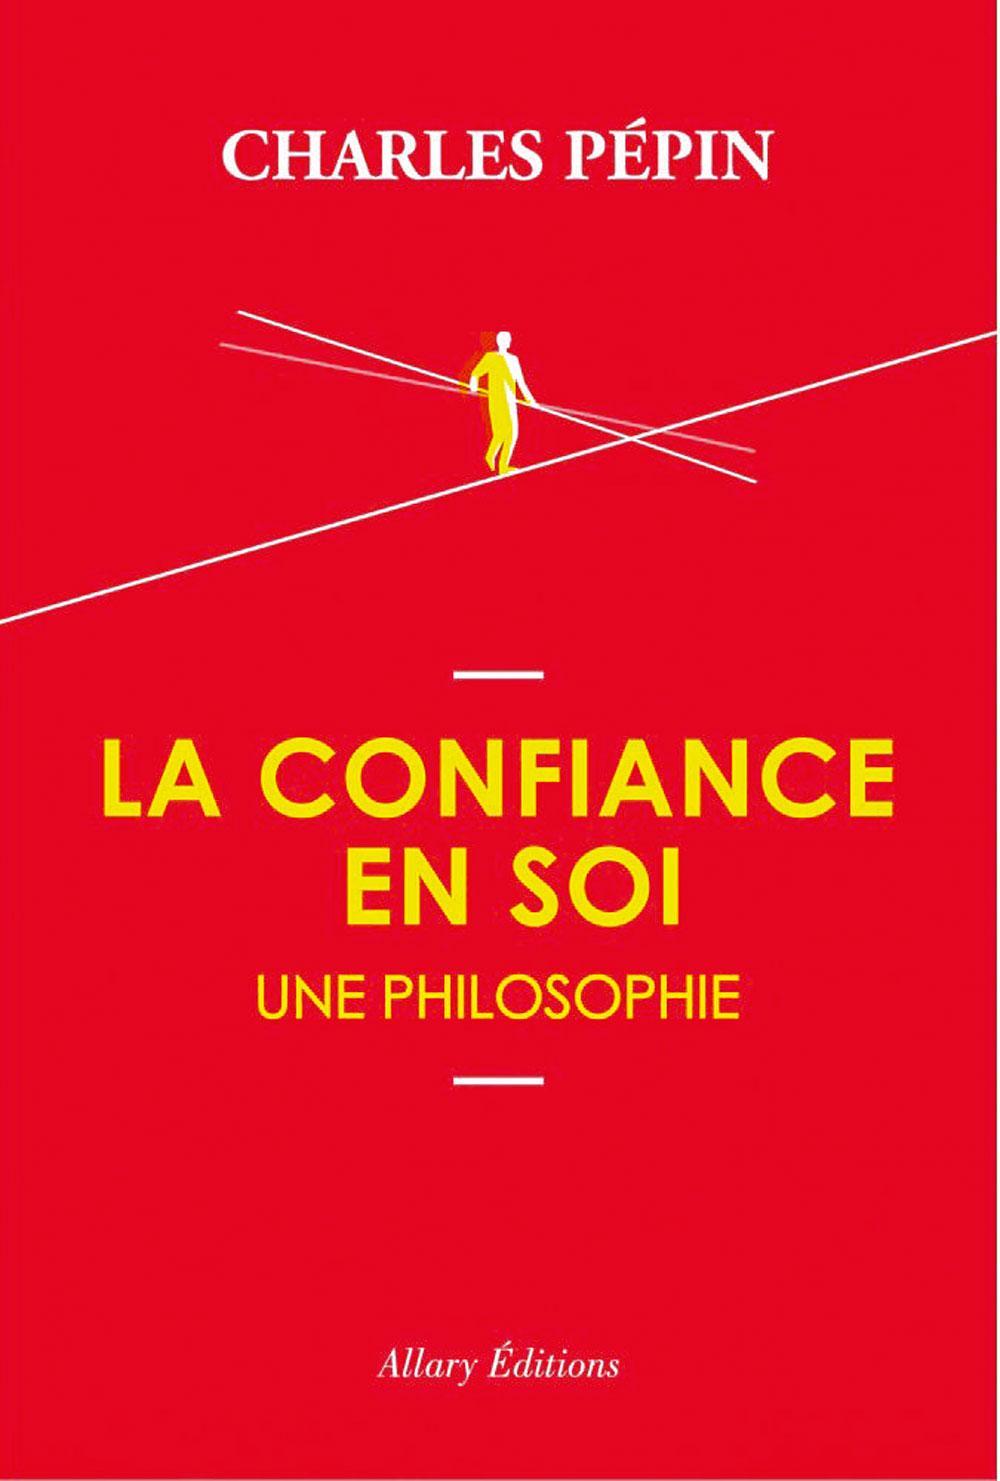 (1) La Confiance en soi, une philosophie, Charles Pépin, Allary éditions, 222 p.